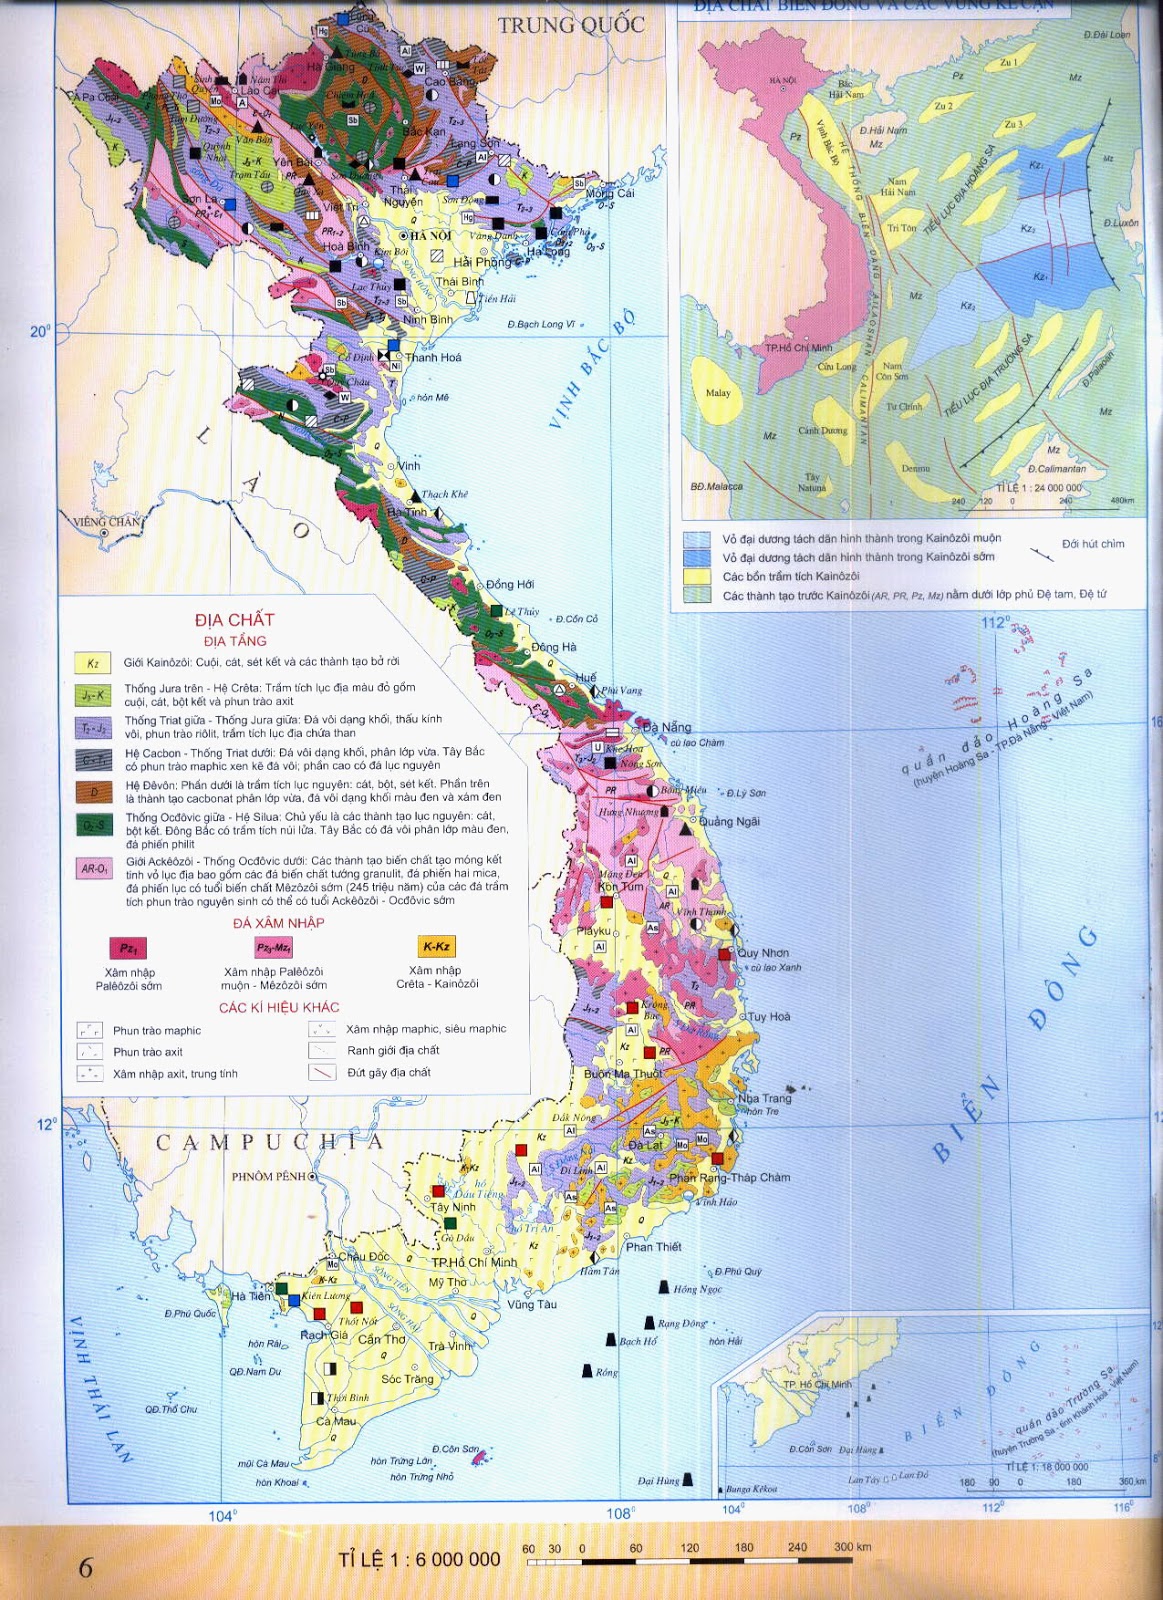 Địa chất khoáng sản: Với nền kinh tế phát triển của Việt Nam, địa chất khoáng sản là một ngành công nghiệp cực kỳ quan trọng và tiềm năng. Chính phủ đang đẩy mạnh nghiên cứu và khai thác những khoáng sản quý giá như dầu khí, than đá, bauxite... Nếu bạn quan tâm đến ngành này, hãy theo chân chúng tôi để khám phá những điều thú vị về địa chất khoáng sản tại Việt Nam.